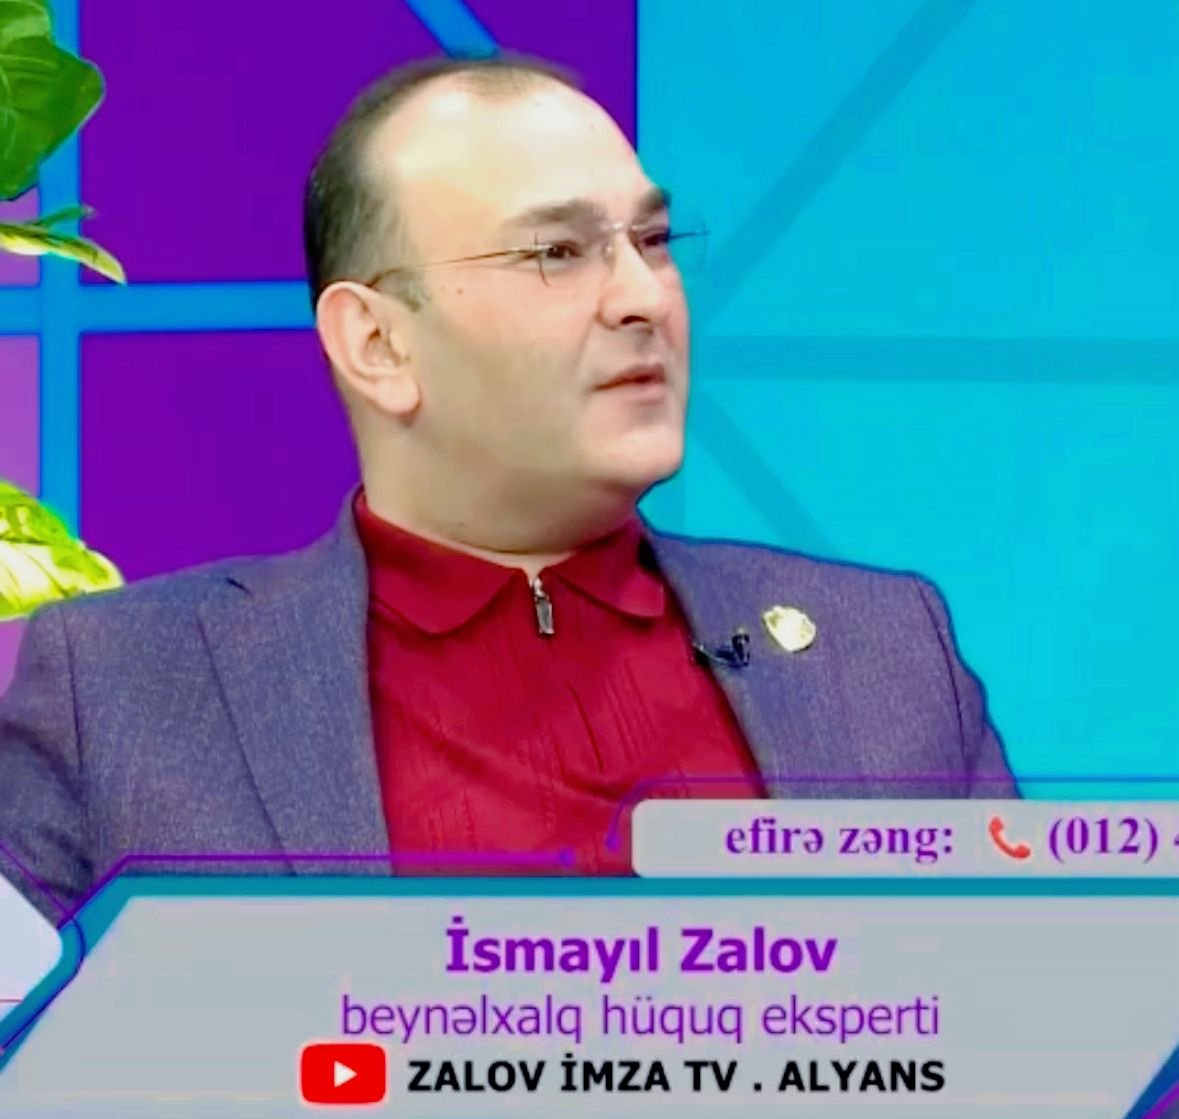 Bu gün ZALOV İMZA TV ALYANSIN rəhbəri, hüquq eksperti İsmail Zalovun brifinqdə çıxışı